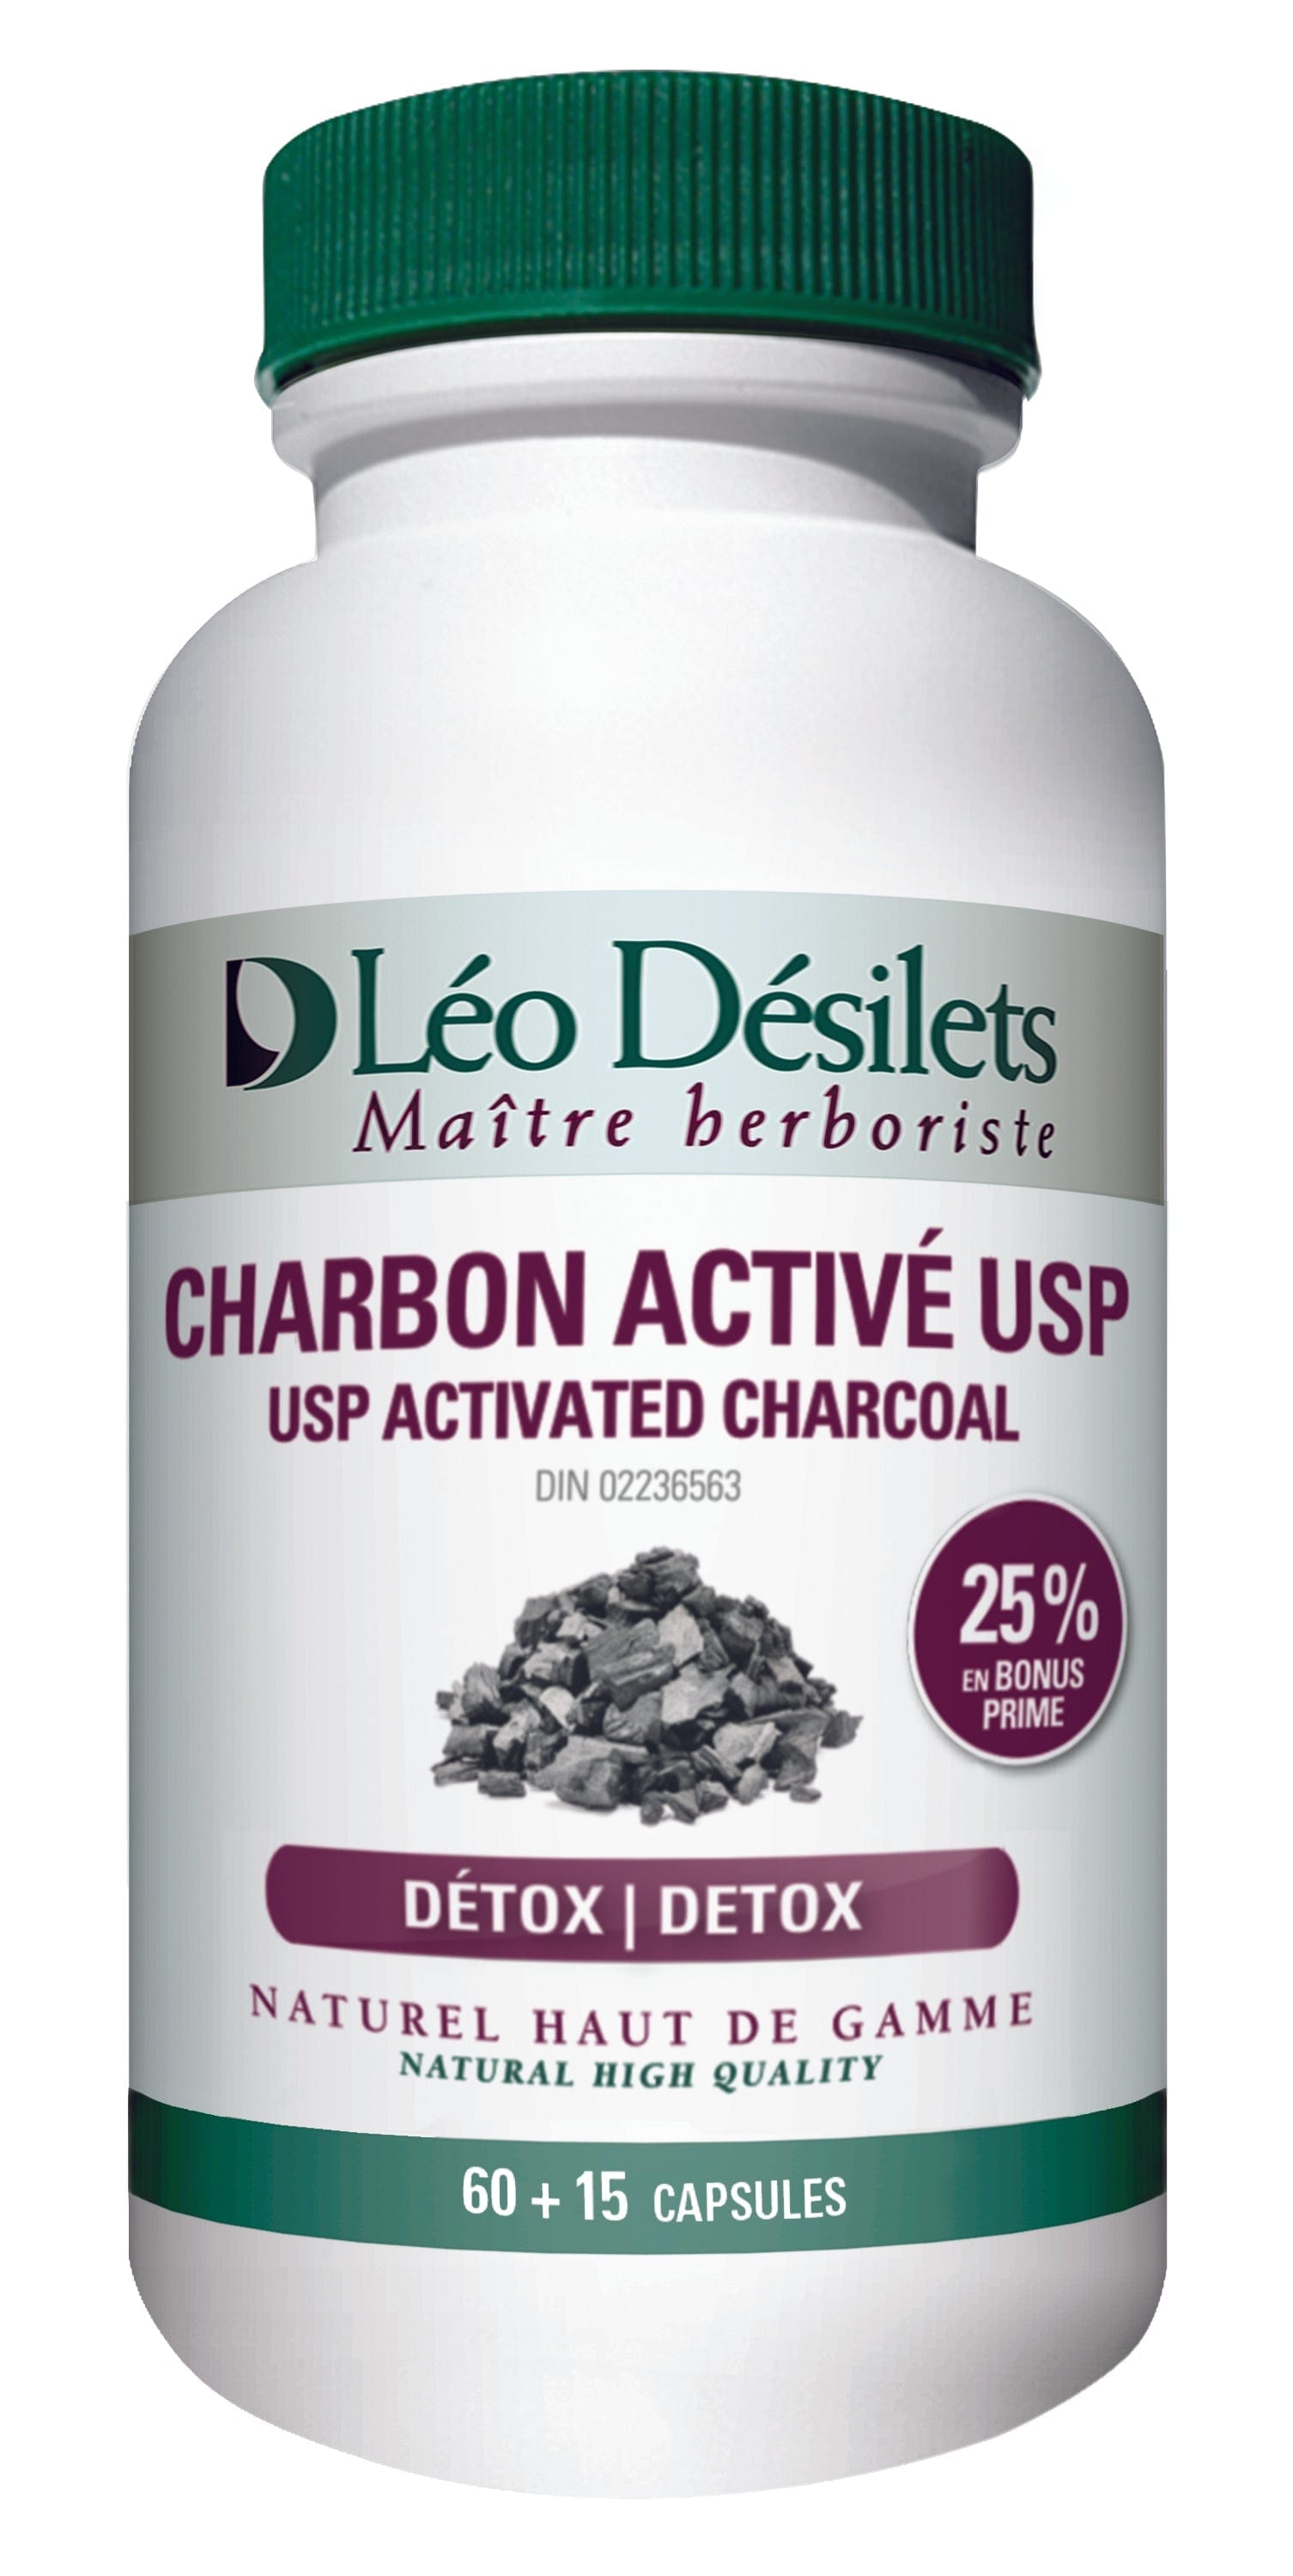 Charbon végétal : Charbon actif en capsules de Phytopharma